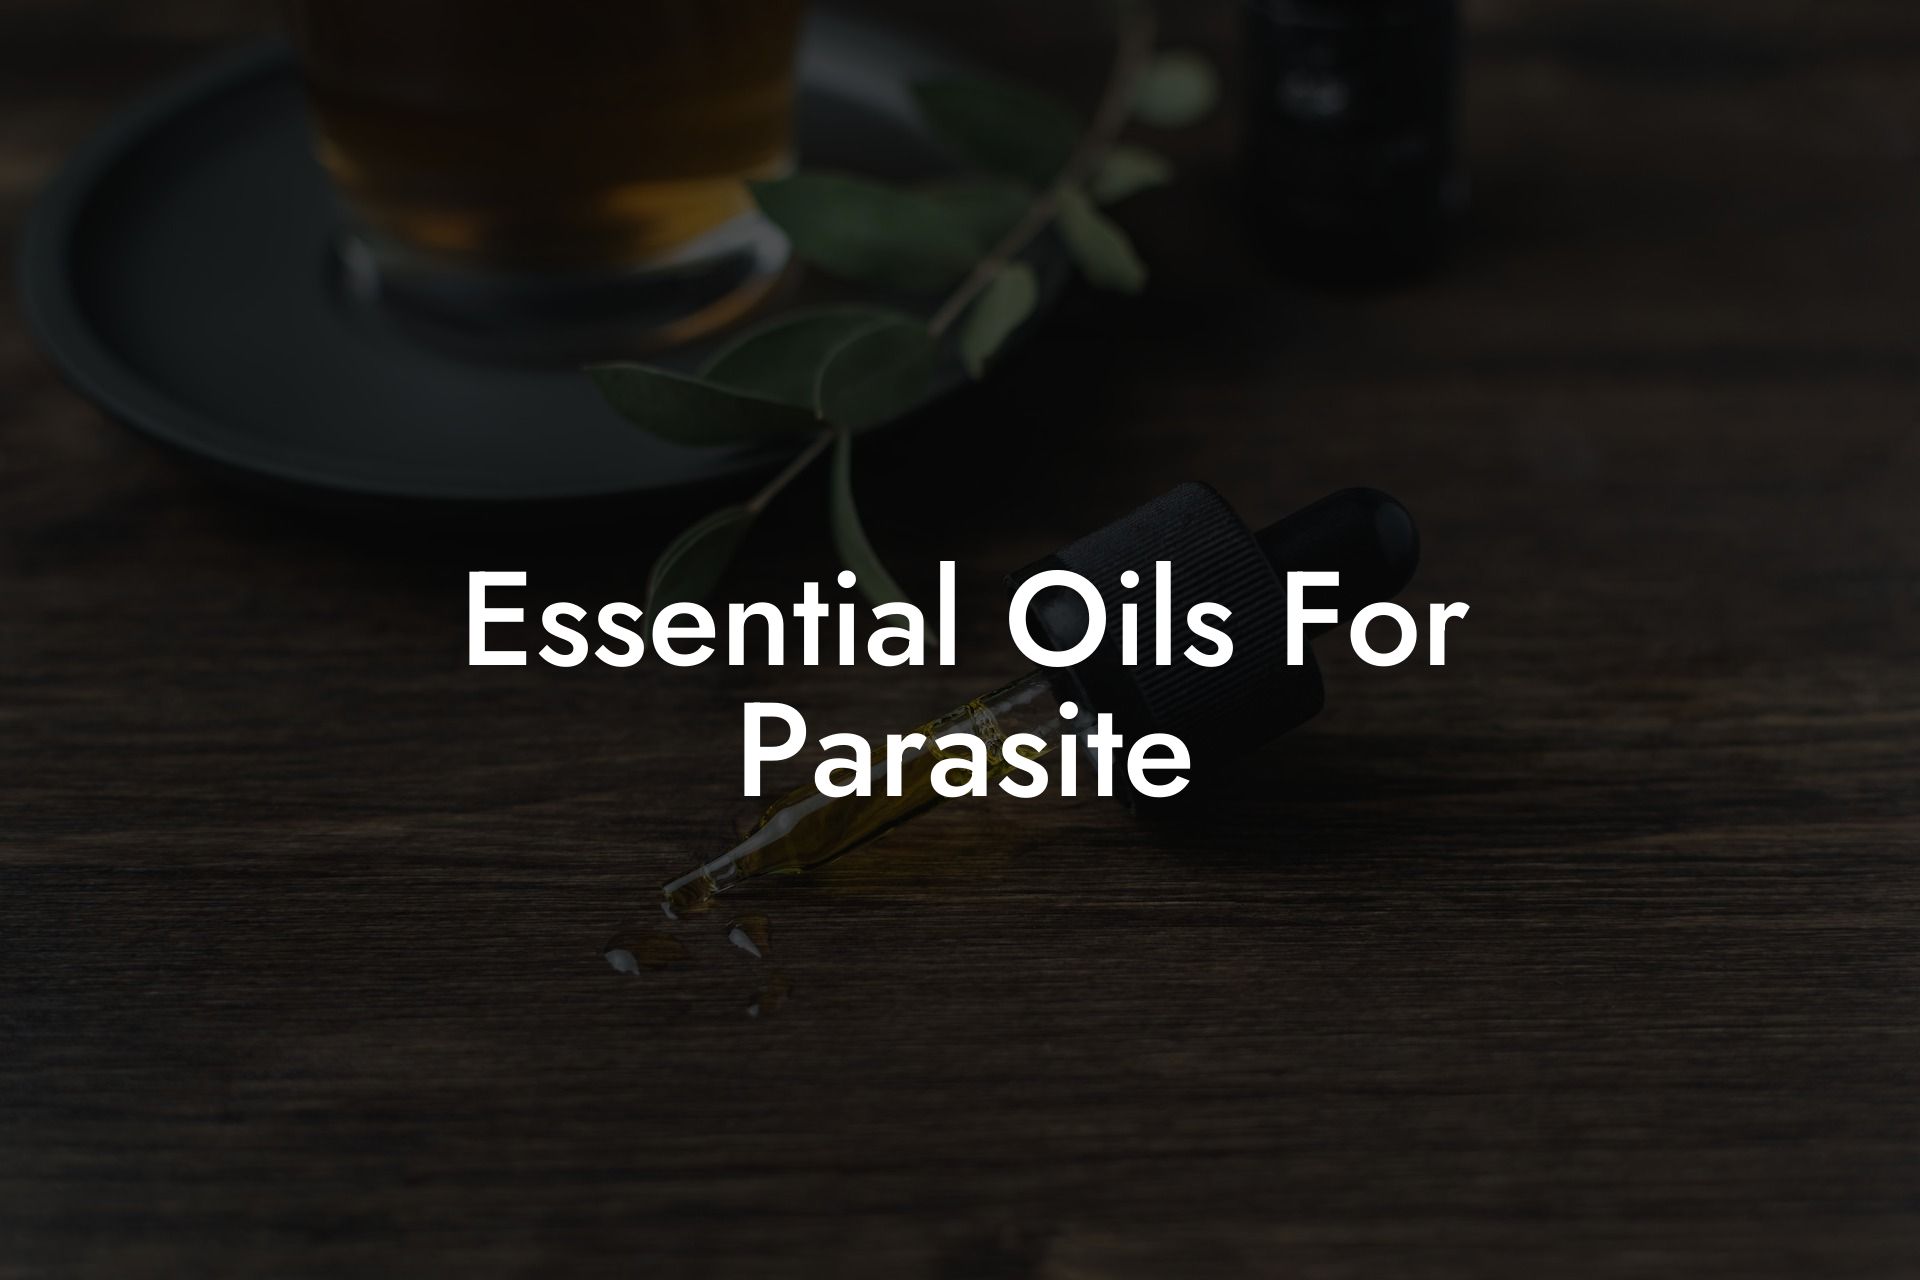 Essential Oils For Parasite